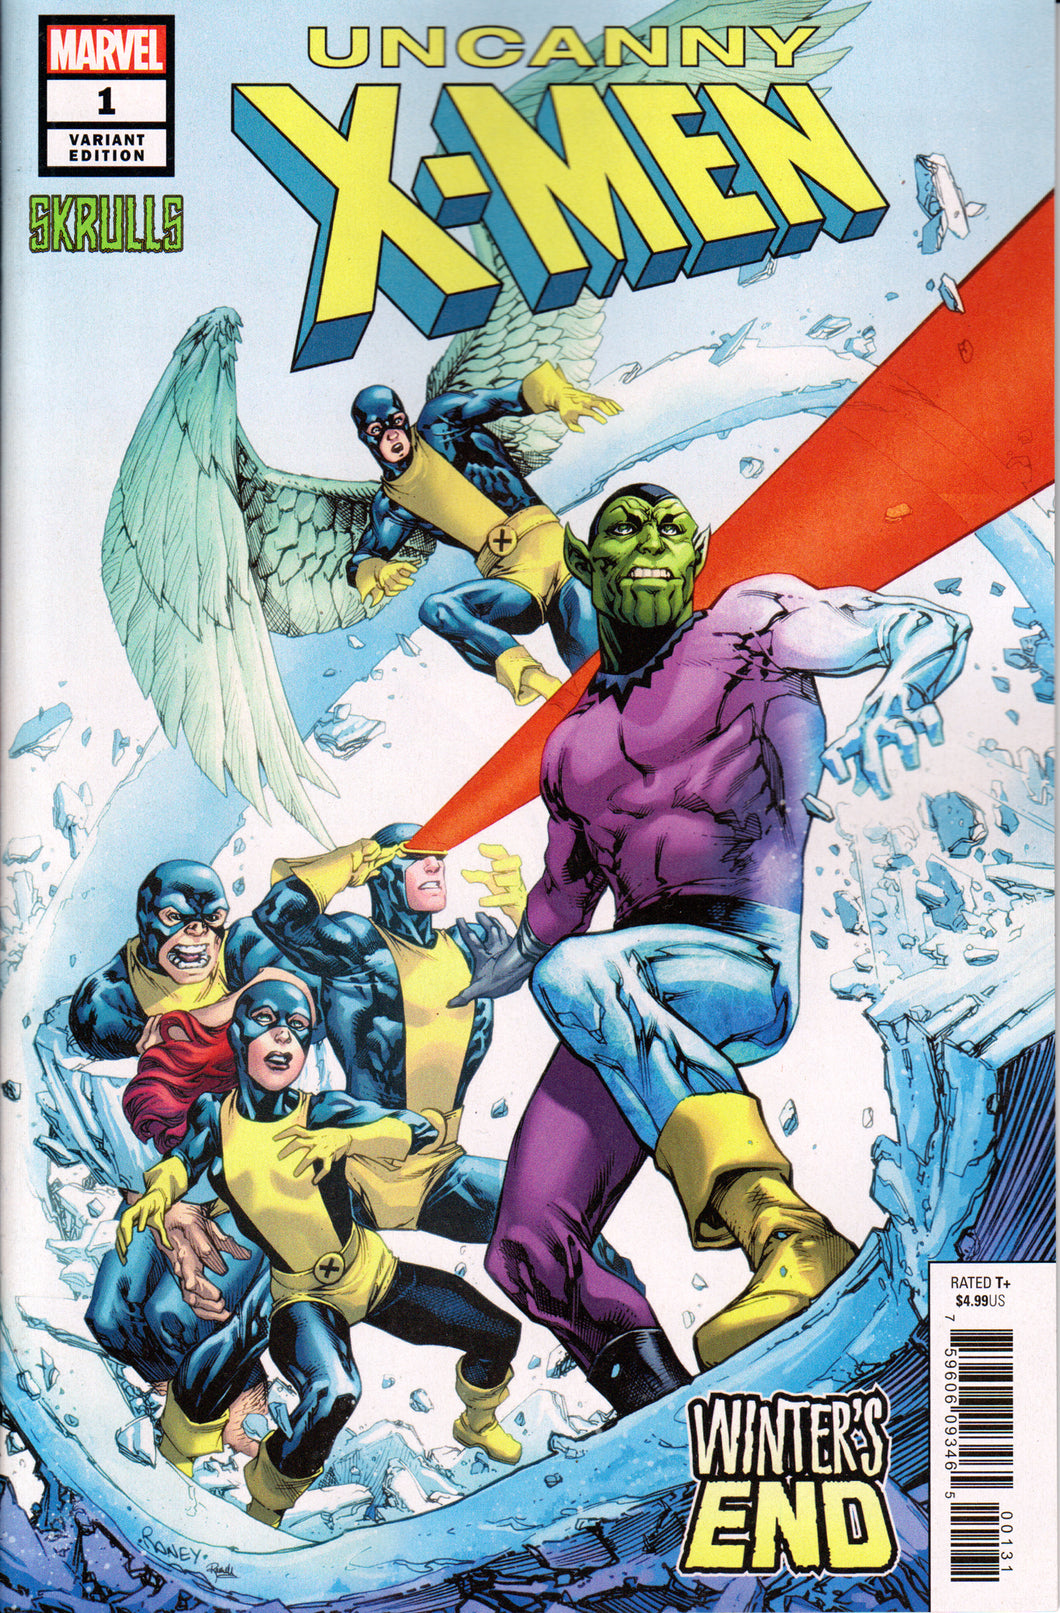 UNCANNY X-MEN: WINTER'S END #1 (SKRULLS VARIANT) COMIC BOOK ~ Marvel Comics